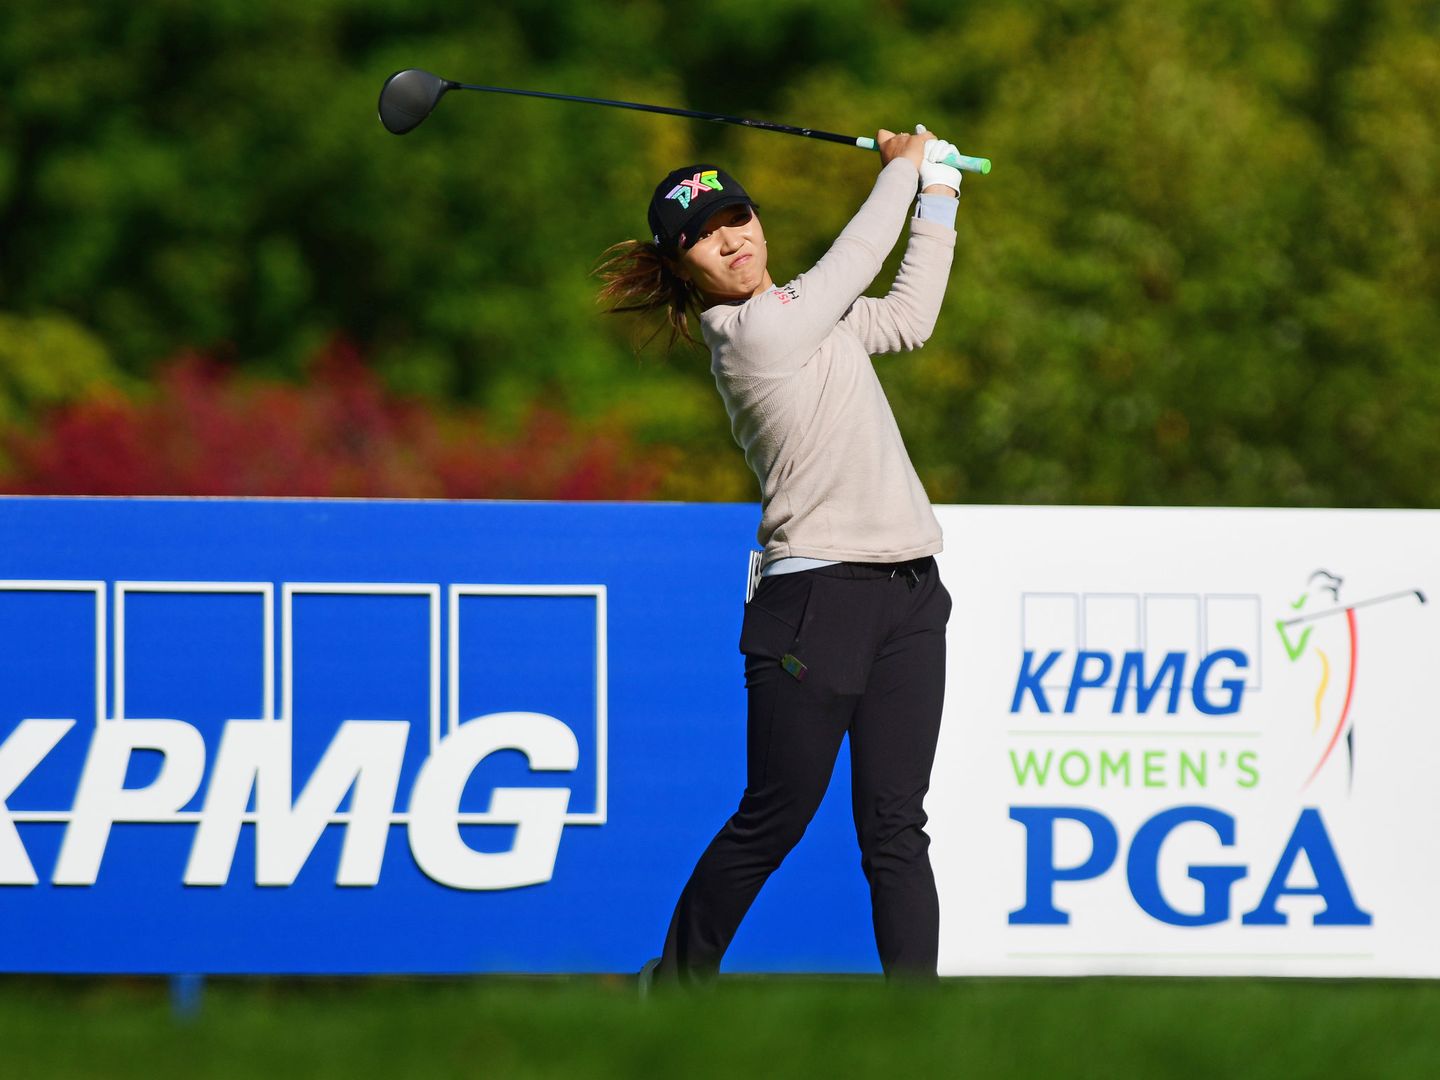 Foto del torneo de golf femenino patrocinado por la auditora KPMG. (Reuters)